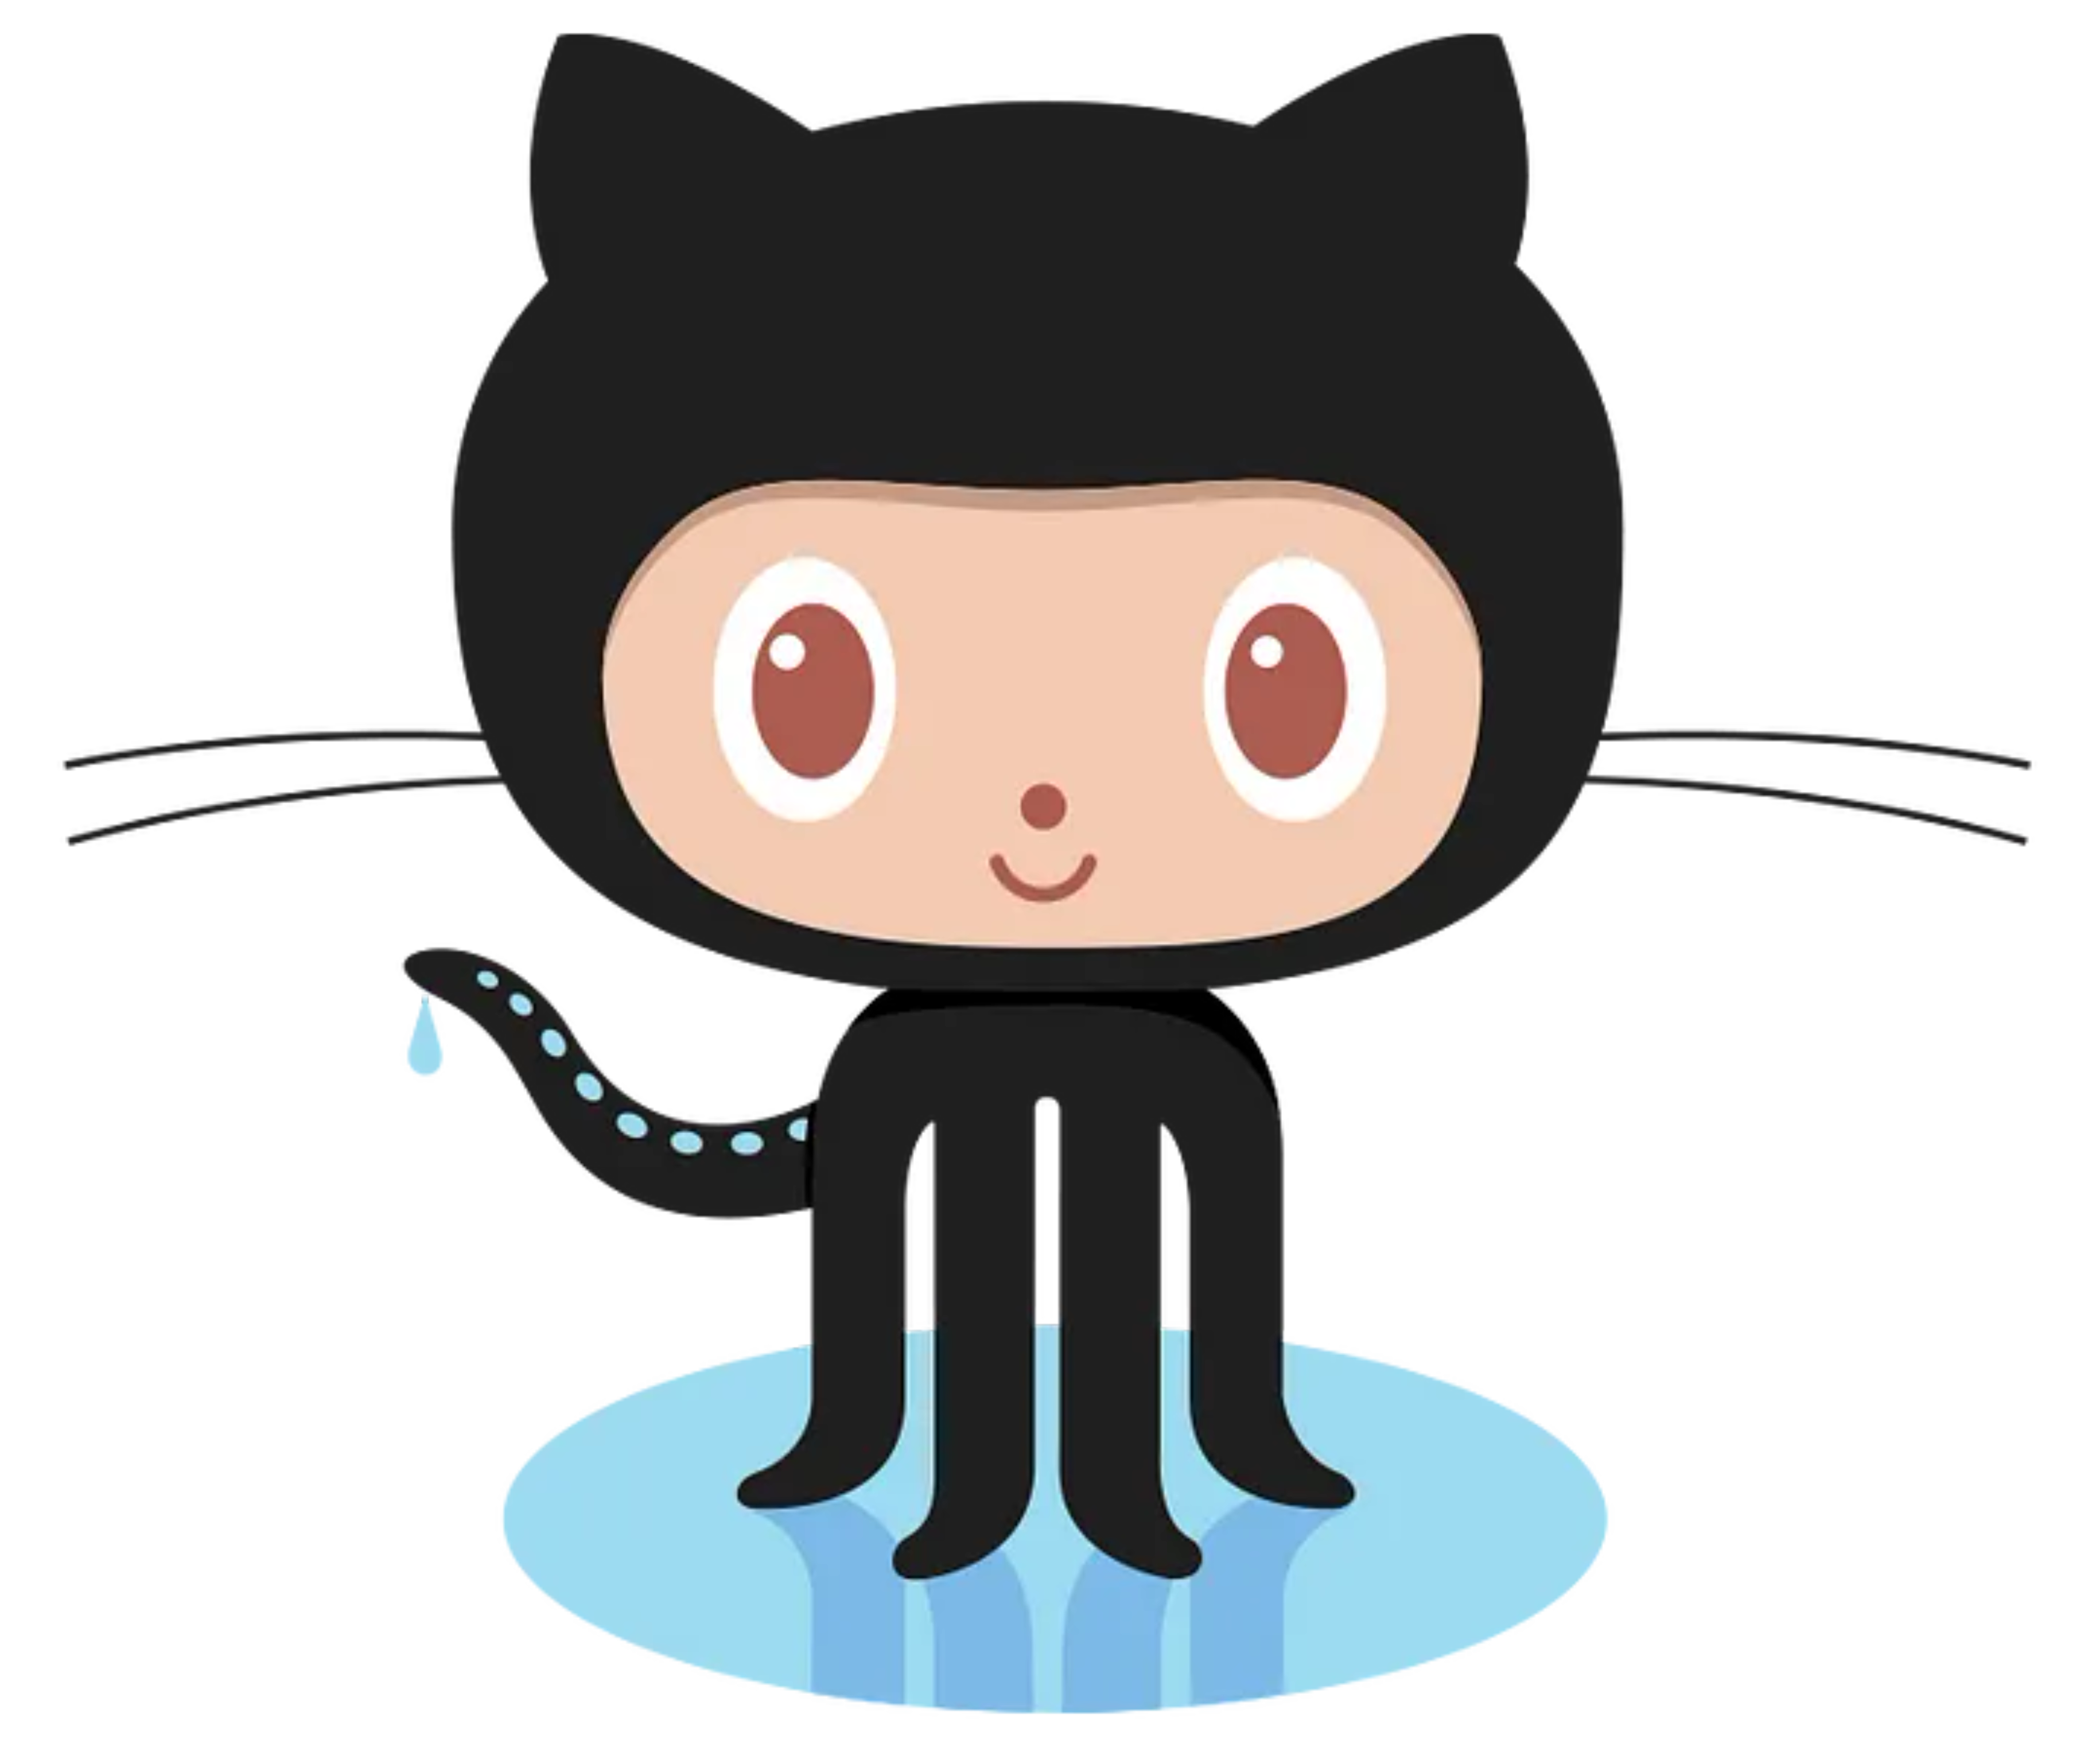 Octocat, mascot voor de source-code hosting service GitHub